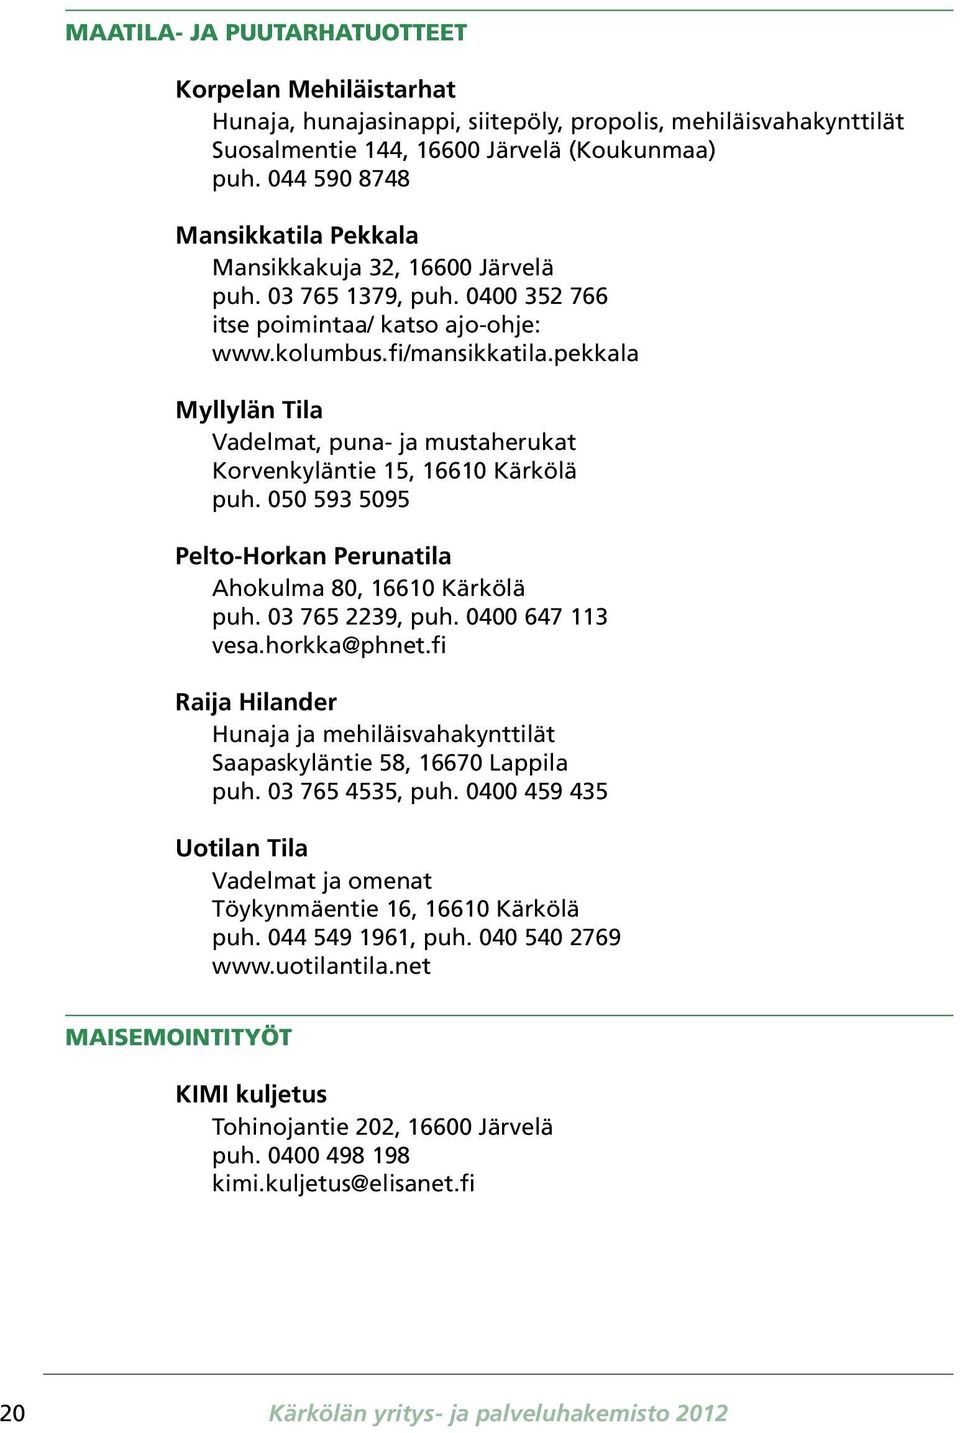 pekkala Myllylän Tila Vadelmat, puna- ja mustaherukat Korvenkyläntie 15, 16610 Kärkölä puh. 050 593 5095 Pelto-Horkan Perunatila Ahokulma 80, 16610 Kärkölä puh. 03 765 2239, puh. 0400 647 113 vesa.